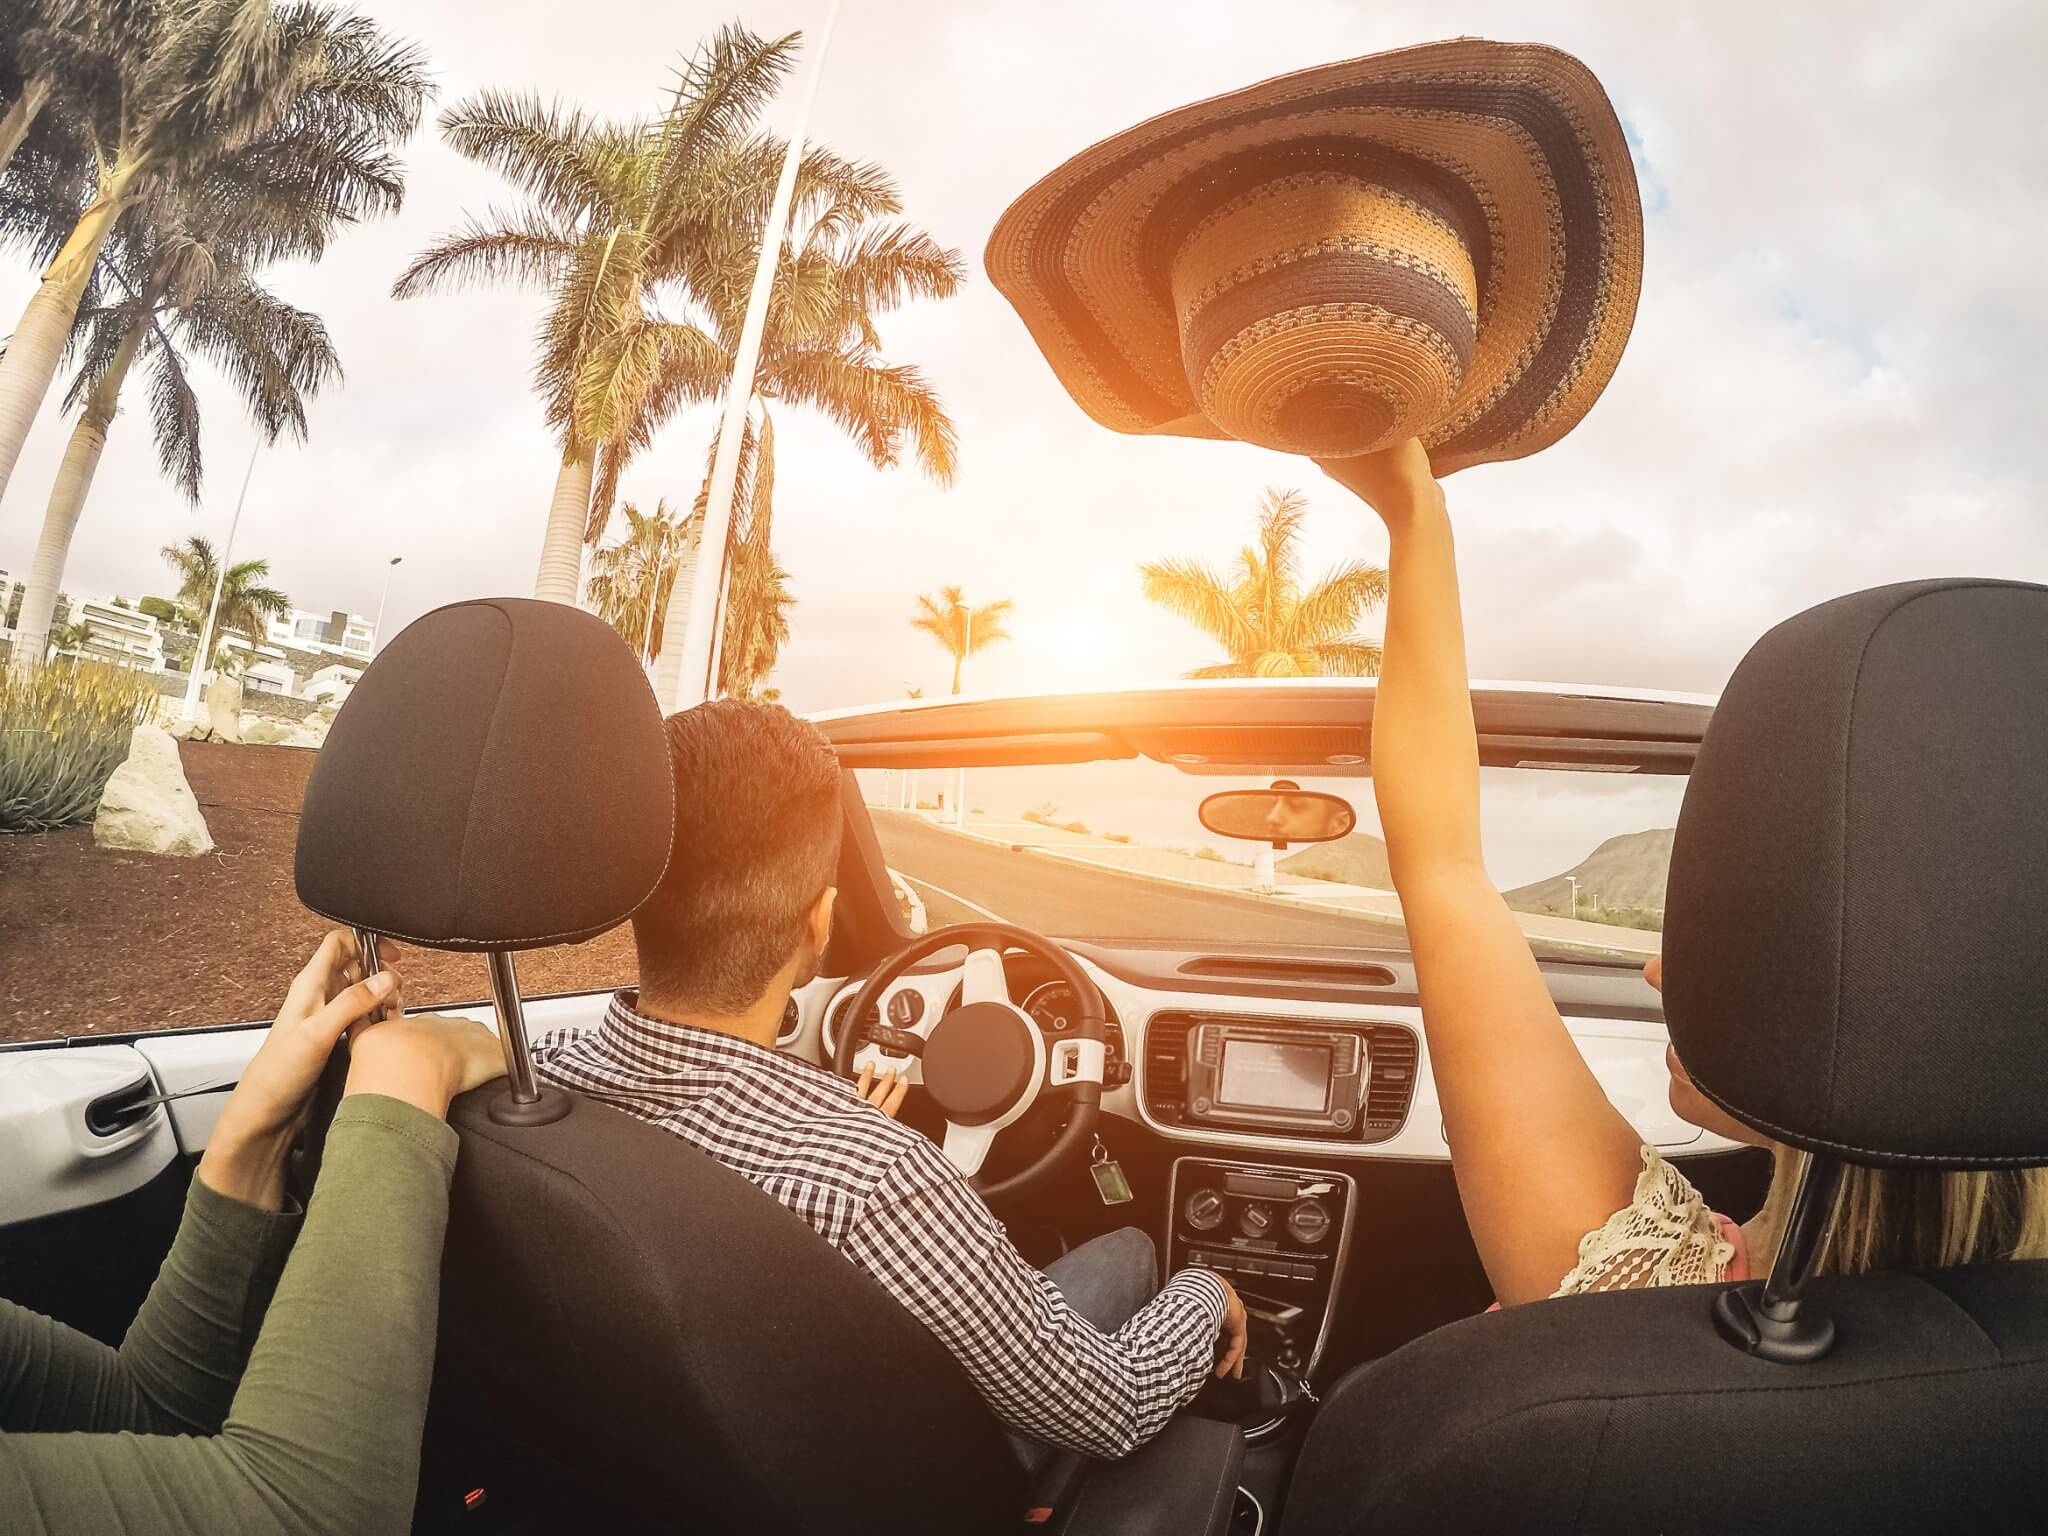 Mit dem Auto in den Urlaub: 10 Tipps für eine umweltfreundliche Autoreise -  Expat News